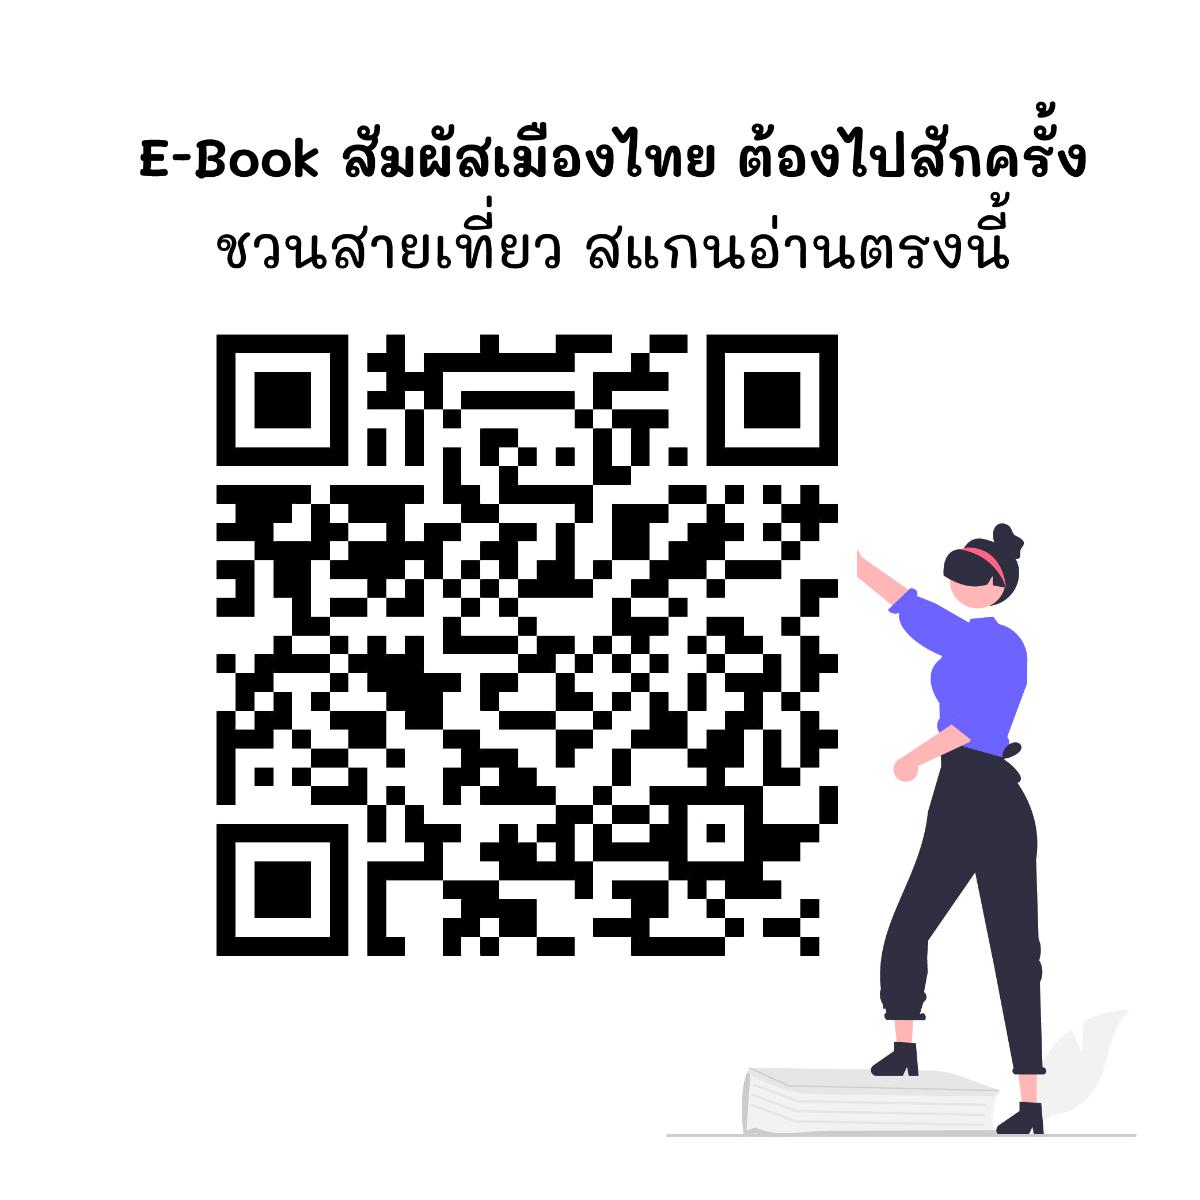 มหัศจรรย์แห่งธรรมชาติ Natural Wonder ใน E-Book สัมผัสเมืองไทย ต้องไปสักครั้ง